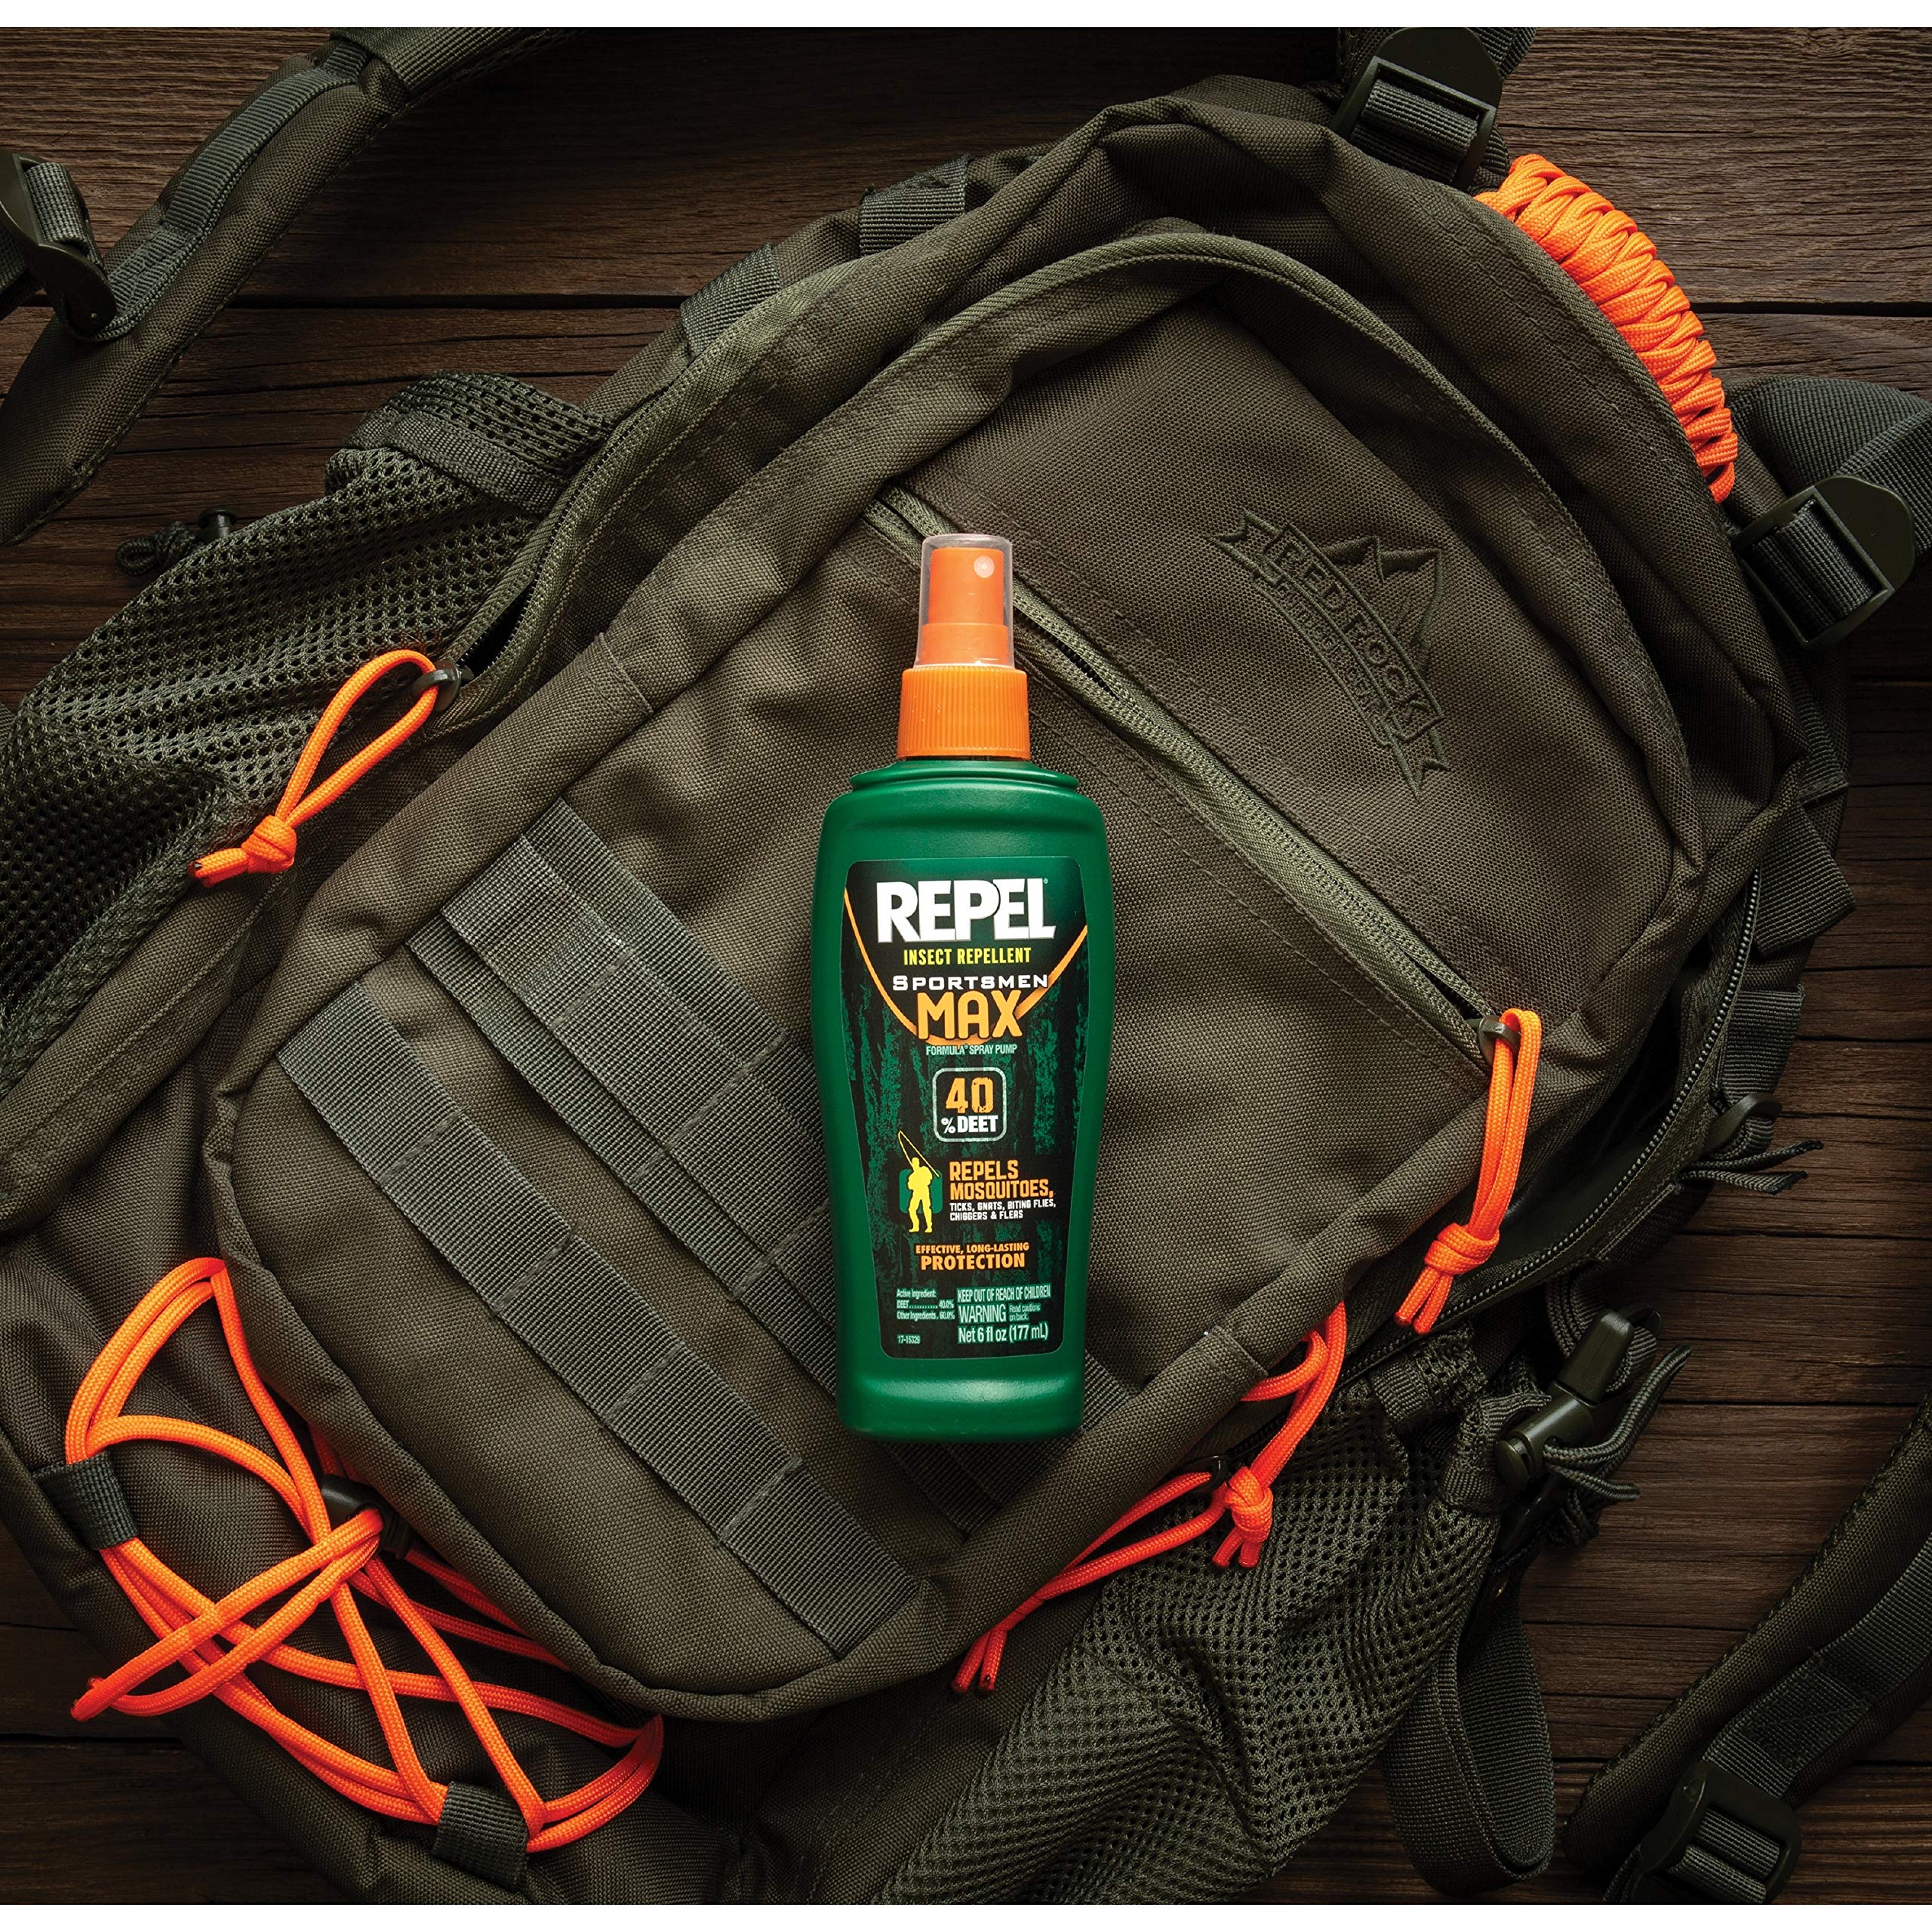 Repel Sportsman Max Formula Insect Repellent - 40% DEET, 6 oz Aerosol (Pack of 2)